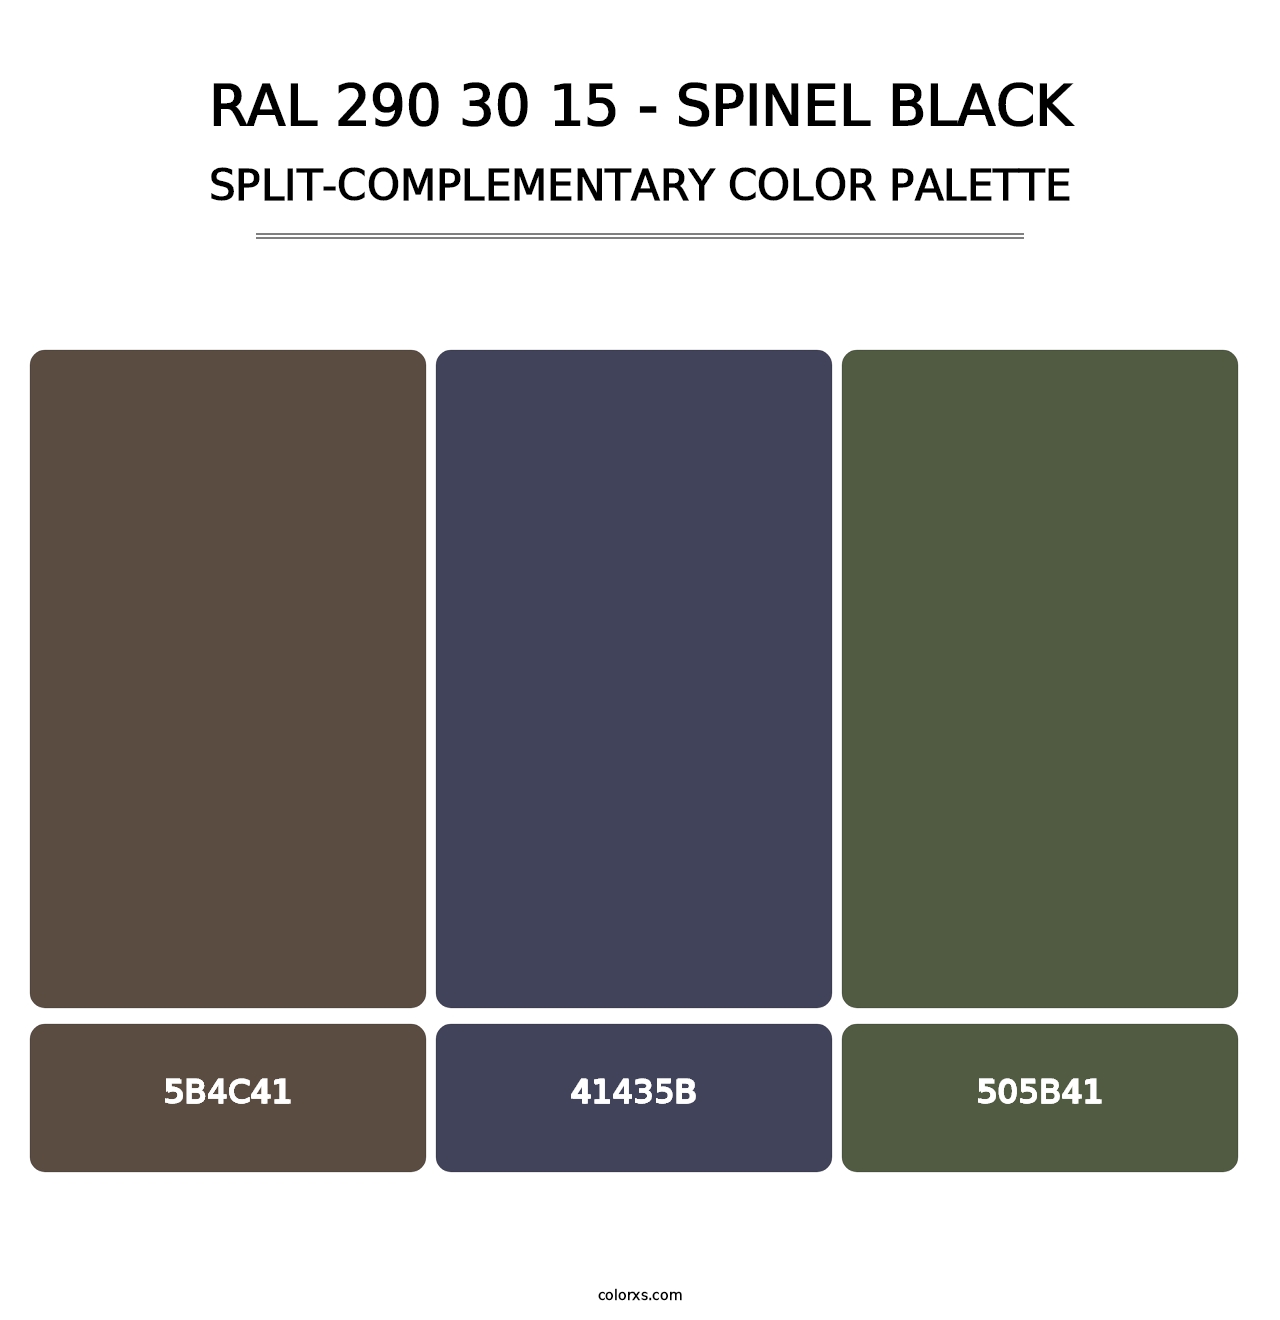 RAL 290 30 15 - Spinel Black - Split-Complementary Color Palette